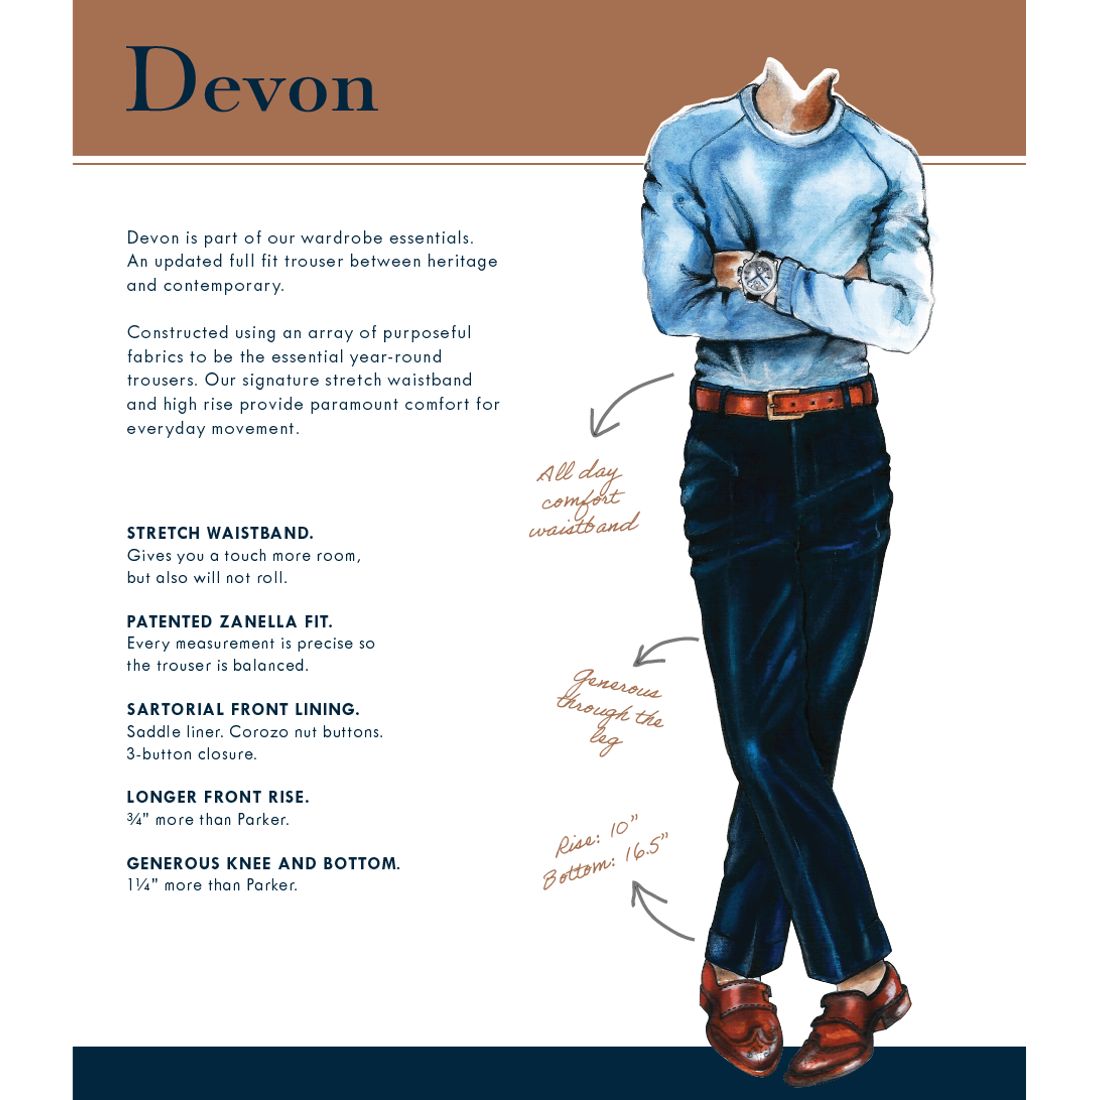 Devon Flat Front Super 120s Wool Serge Trouser in Tan (Modern Full Fit) by Zanella